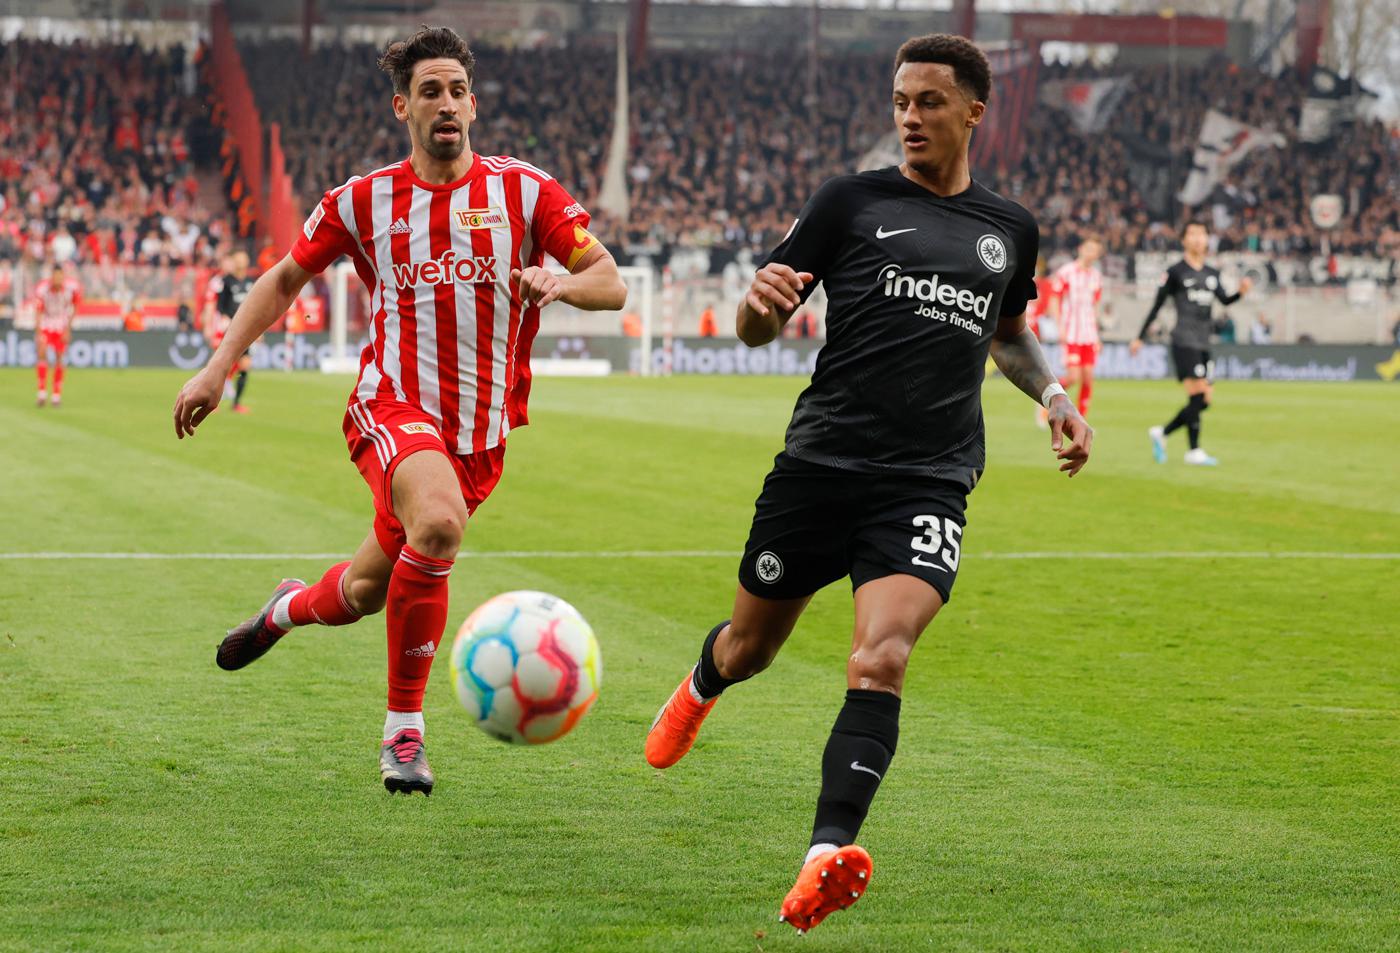 Union v Eintracht - 2-0. Niemiecka ekstraklasa, runda 25. Przegląd meczu, statystyki.